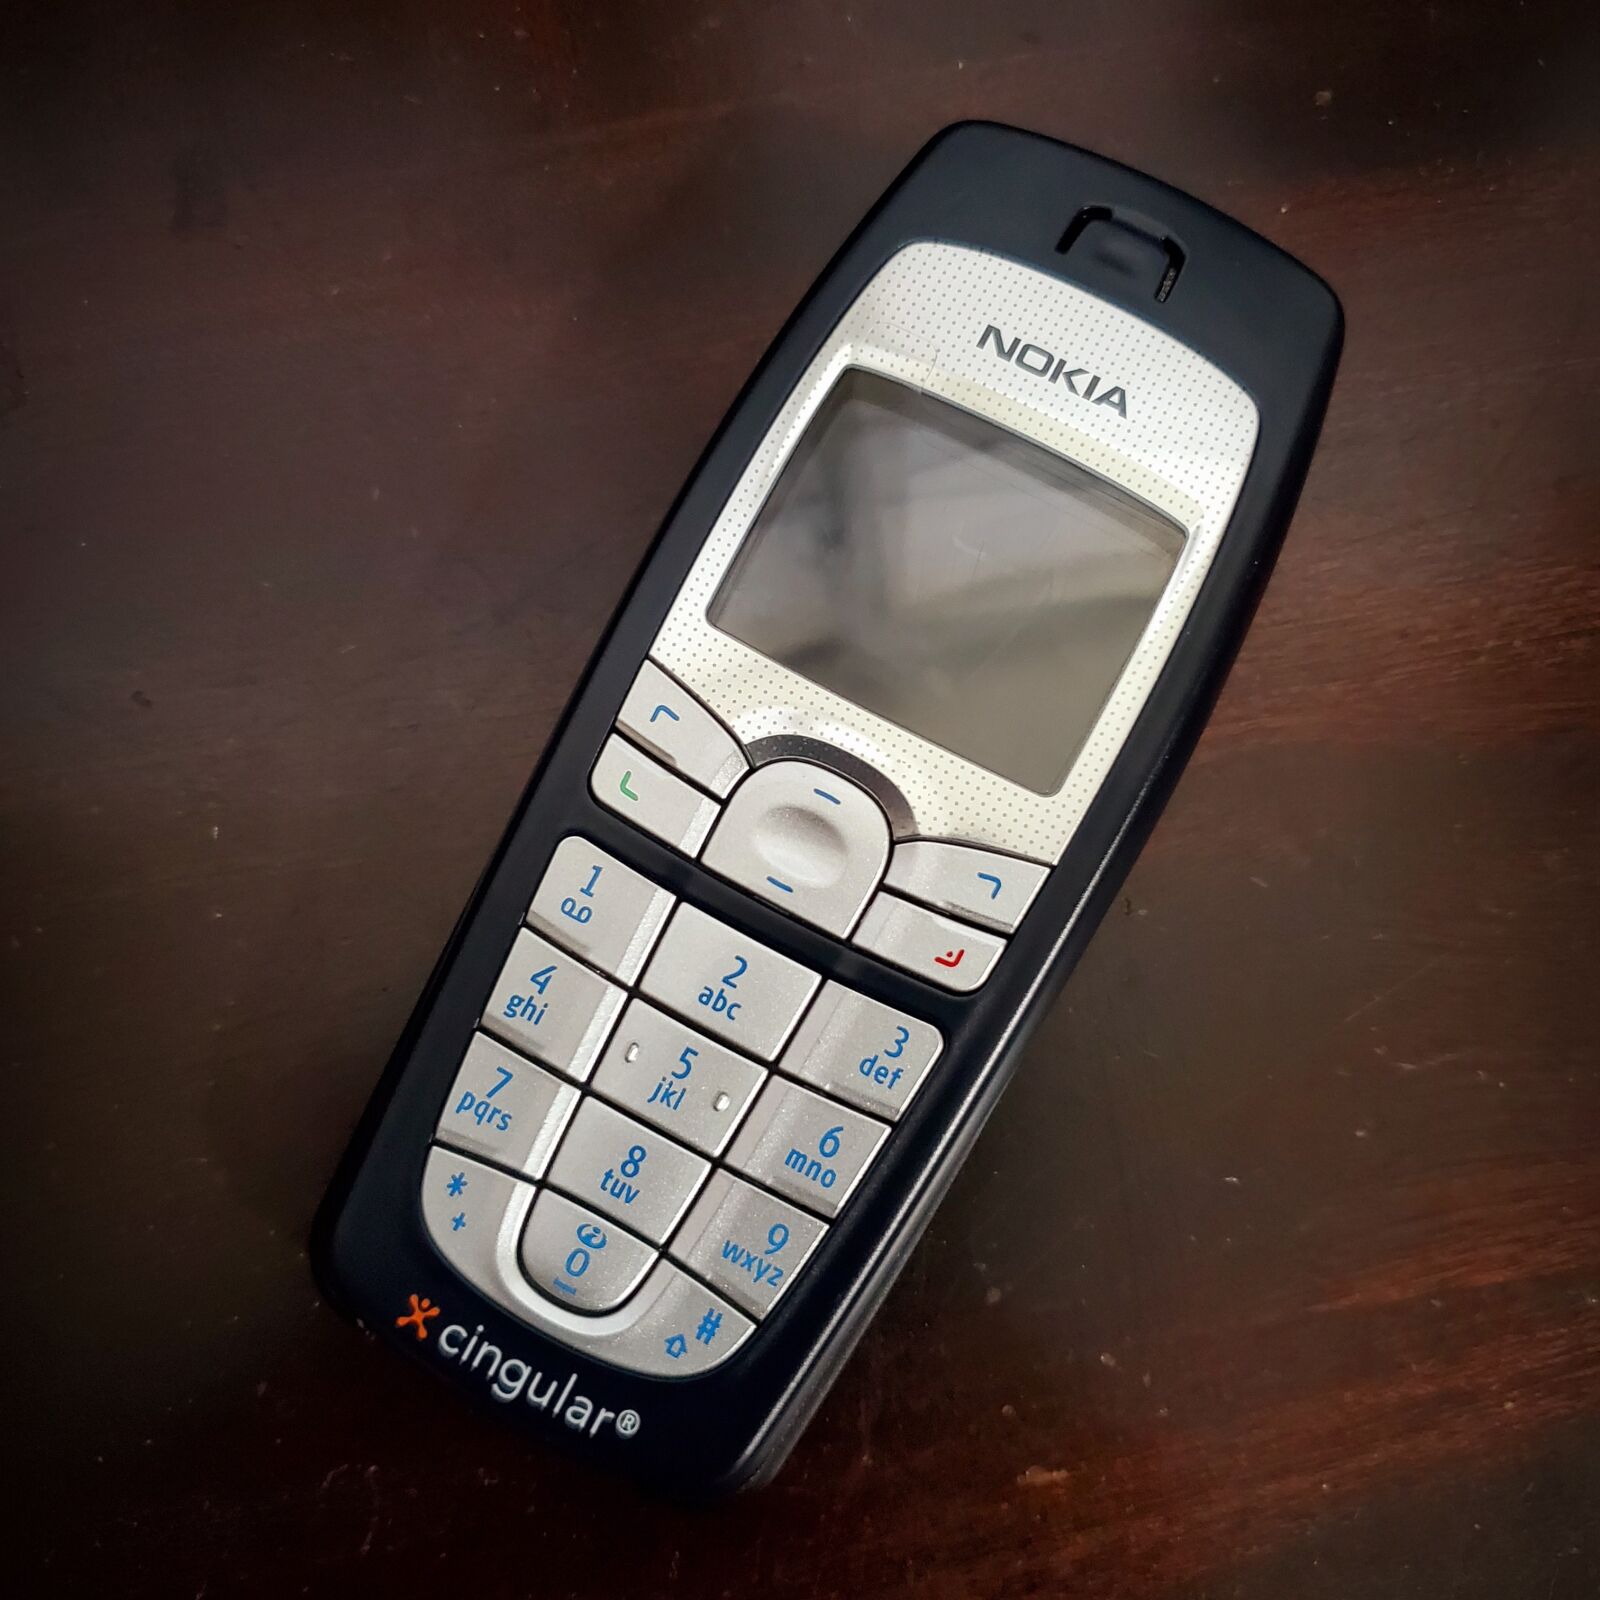 Samsung Galaxy S10e sample photo. Nokia, cell phone, mobile photography